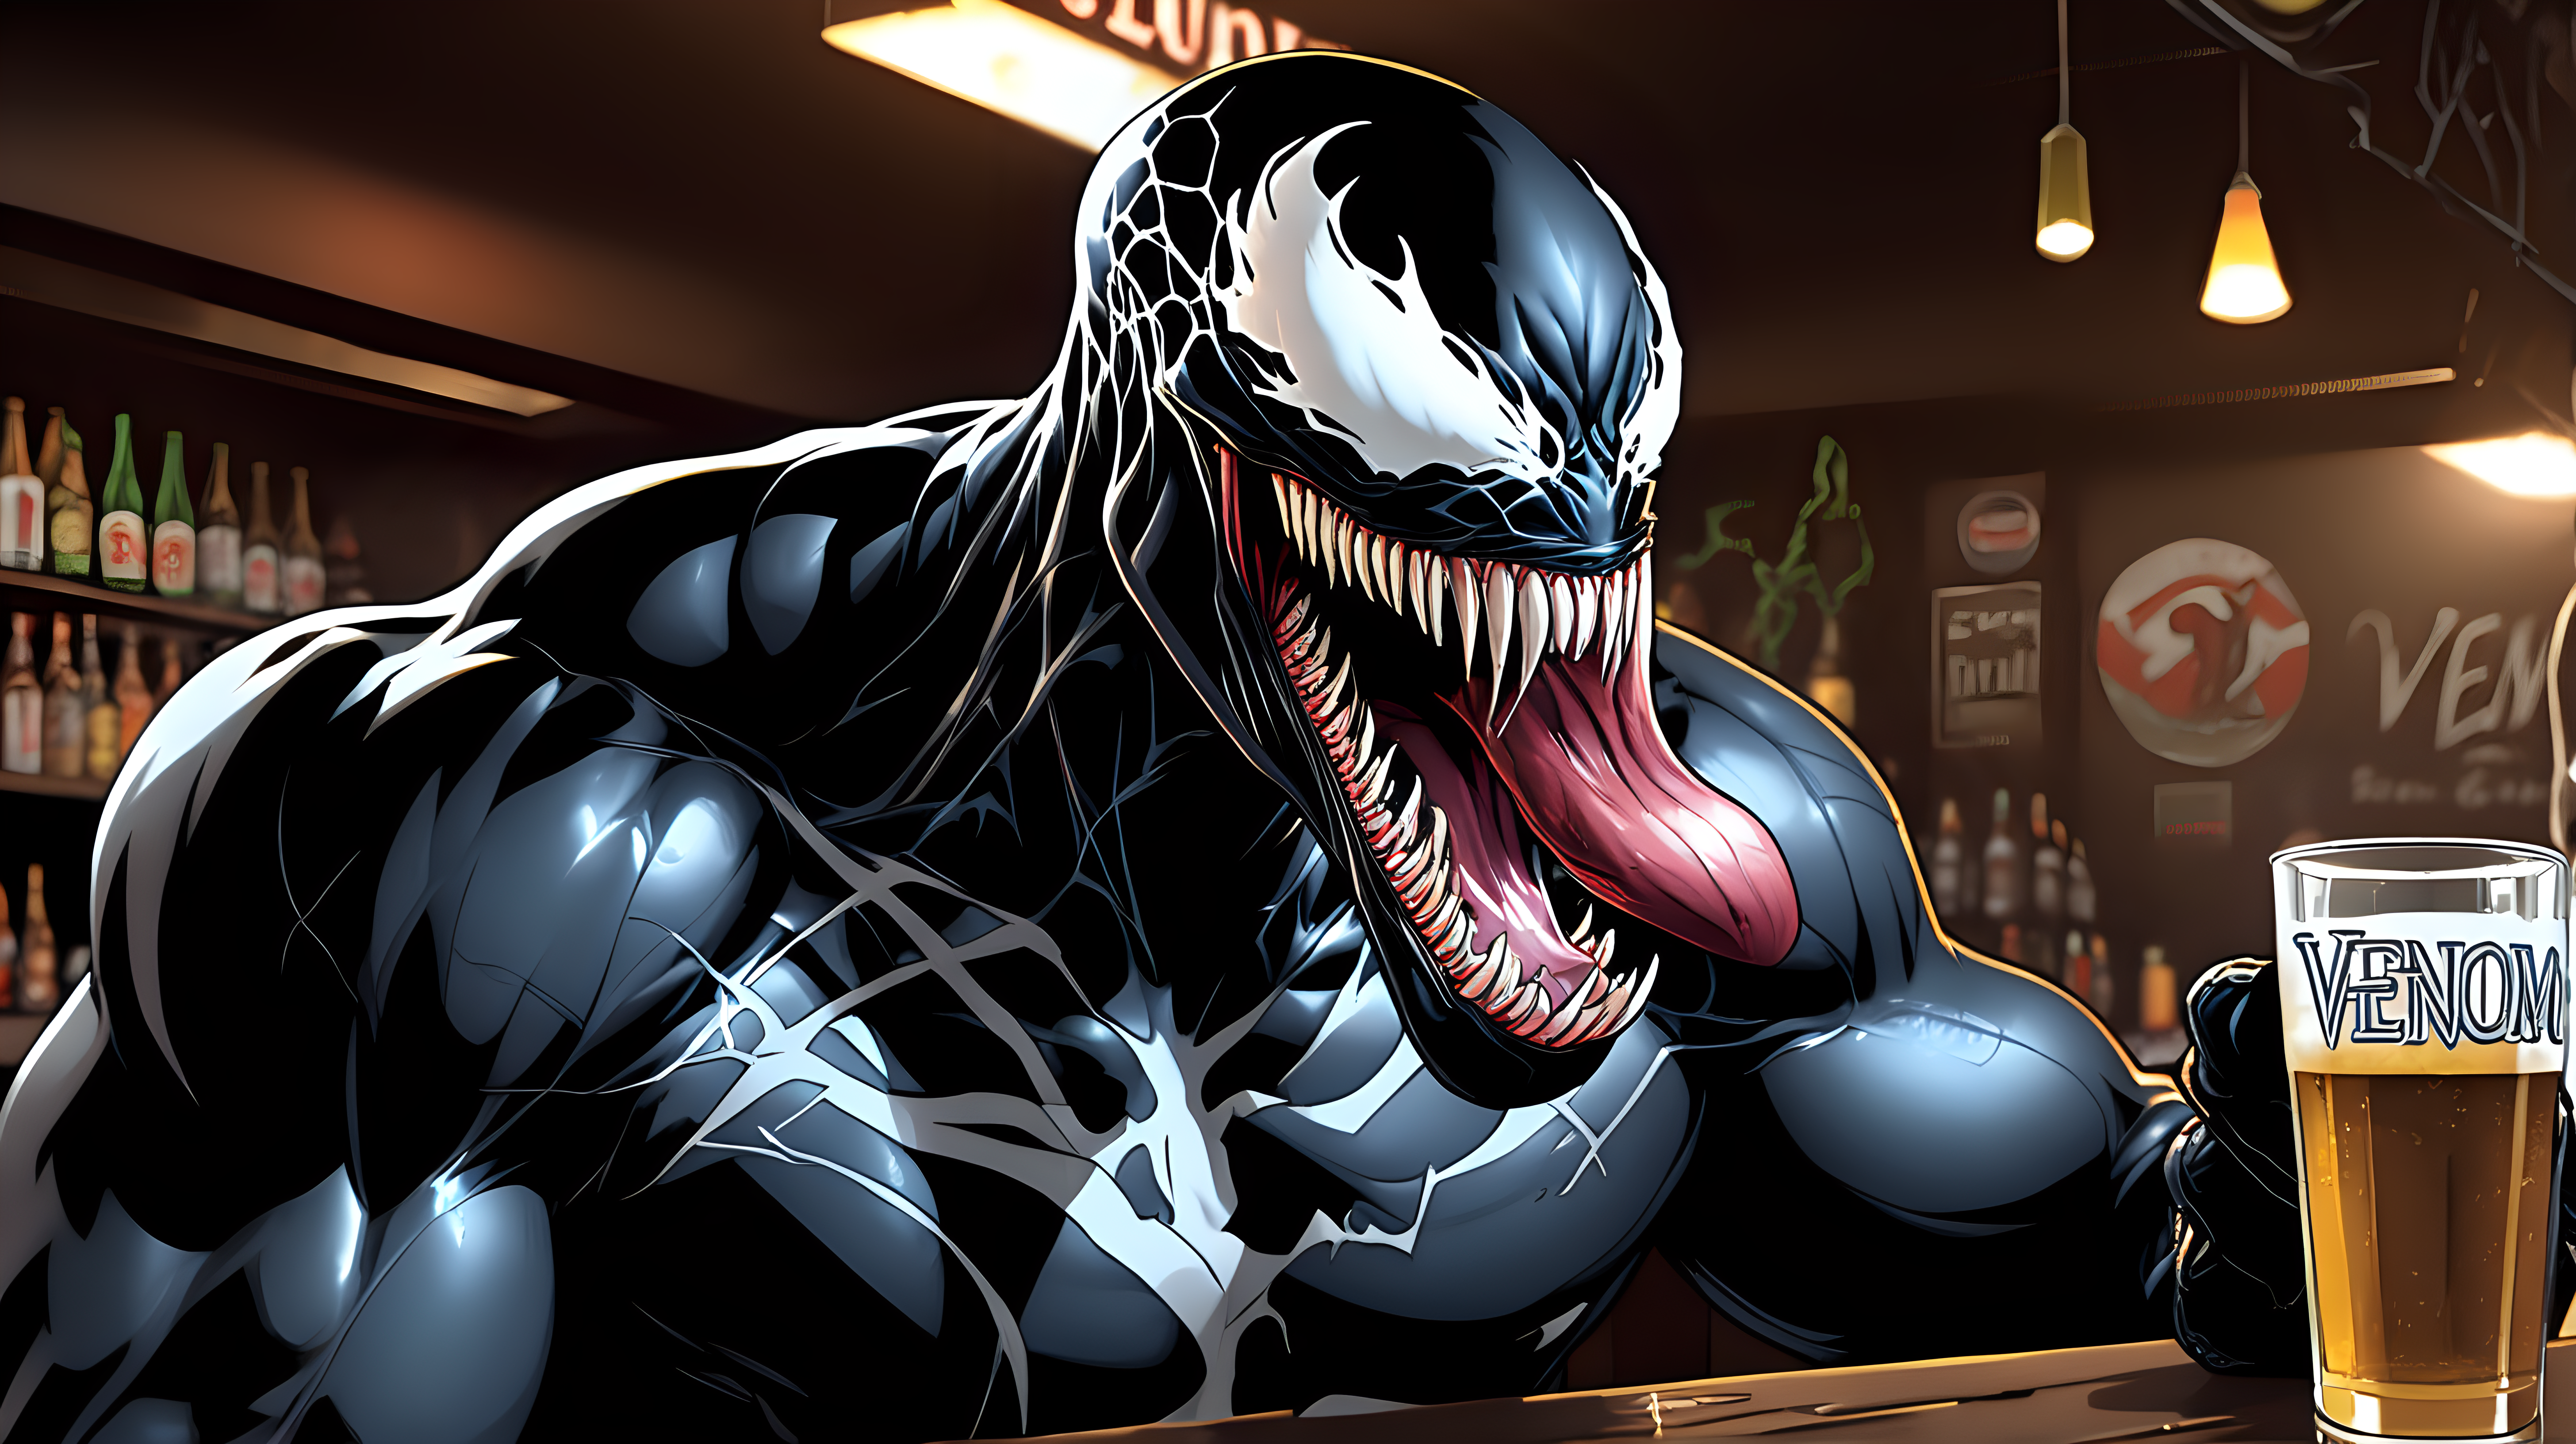 Venom drinking a beer at a bar